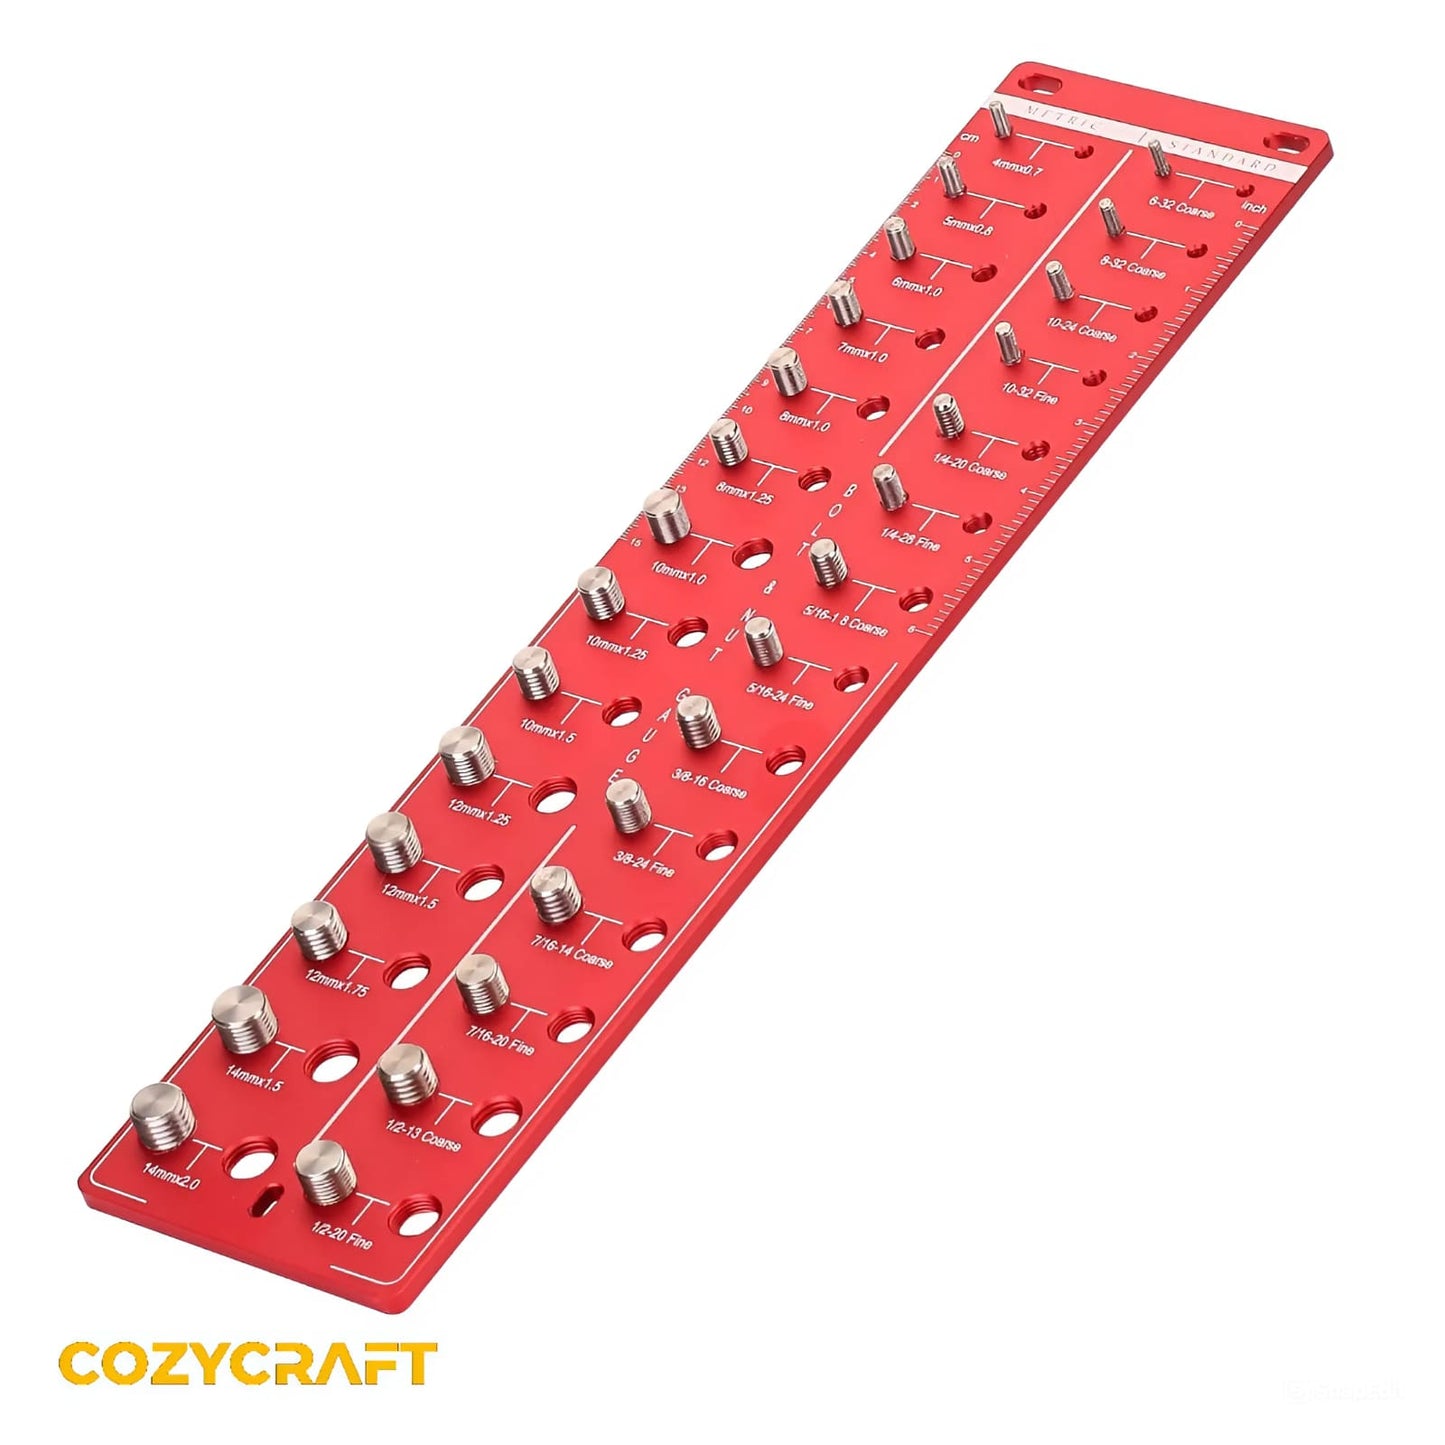 CozyCraft™ Nut and Bolt Thread Checker